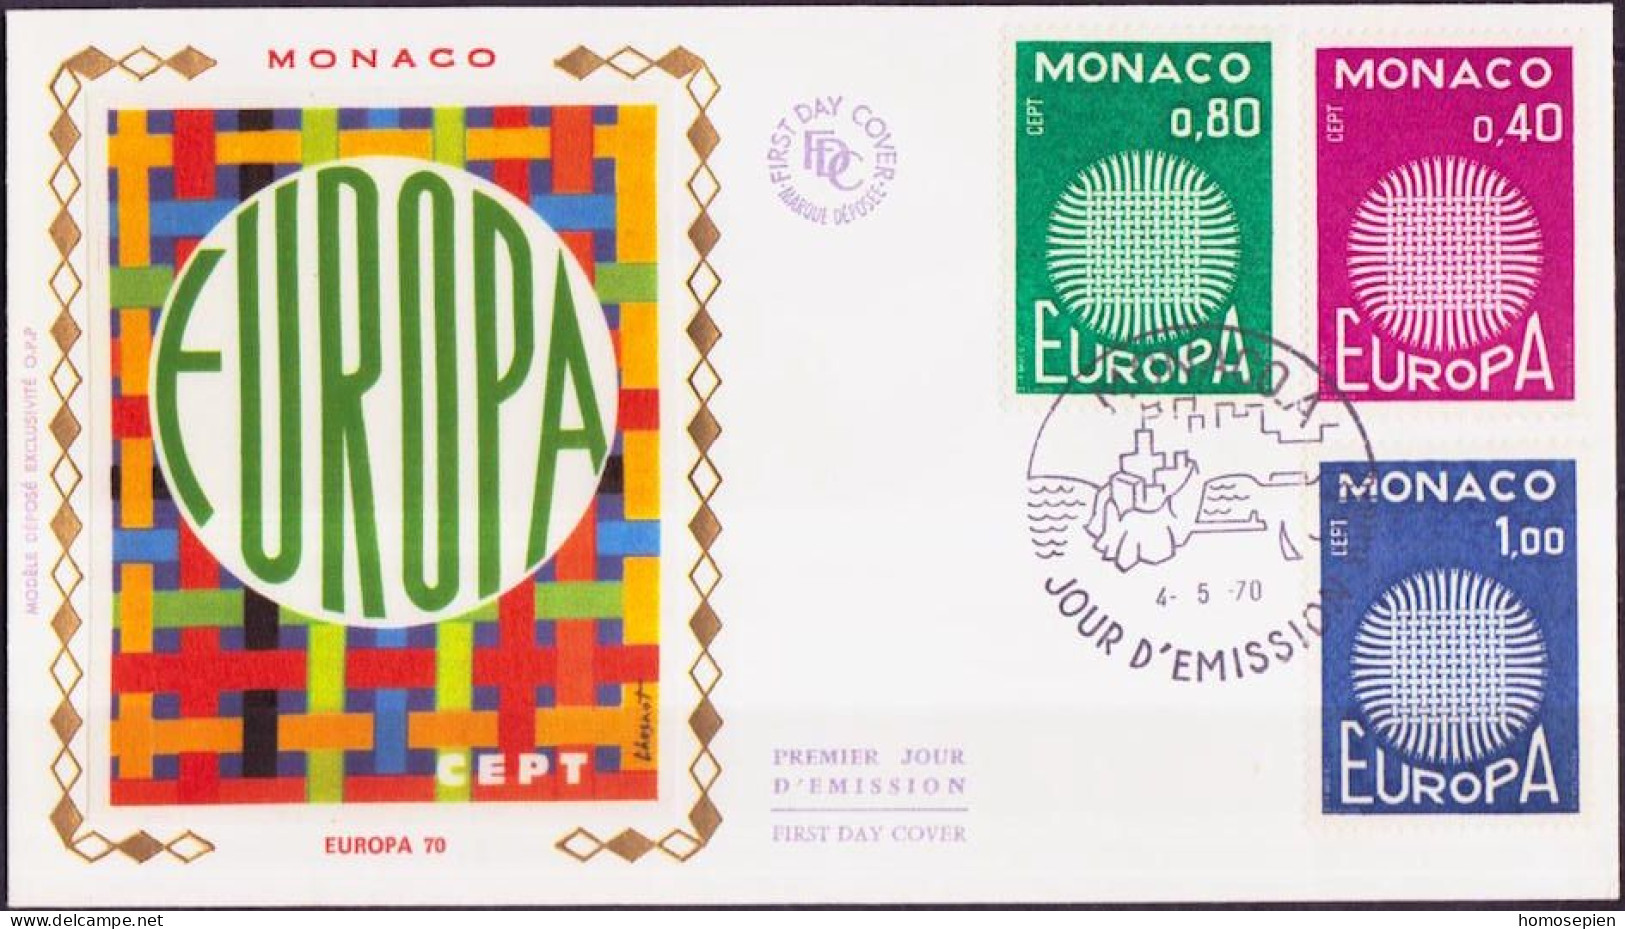 Europa CEPT 1970 Monaco FDC1 Y&T N°819 à 821 - Michel N°977 à 979 - 1970